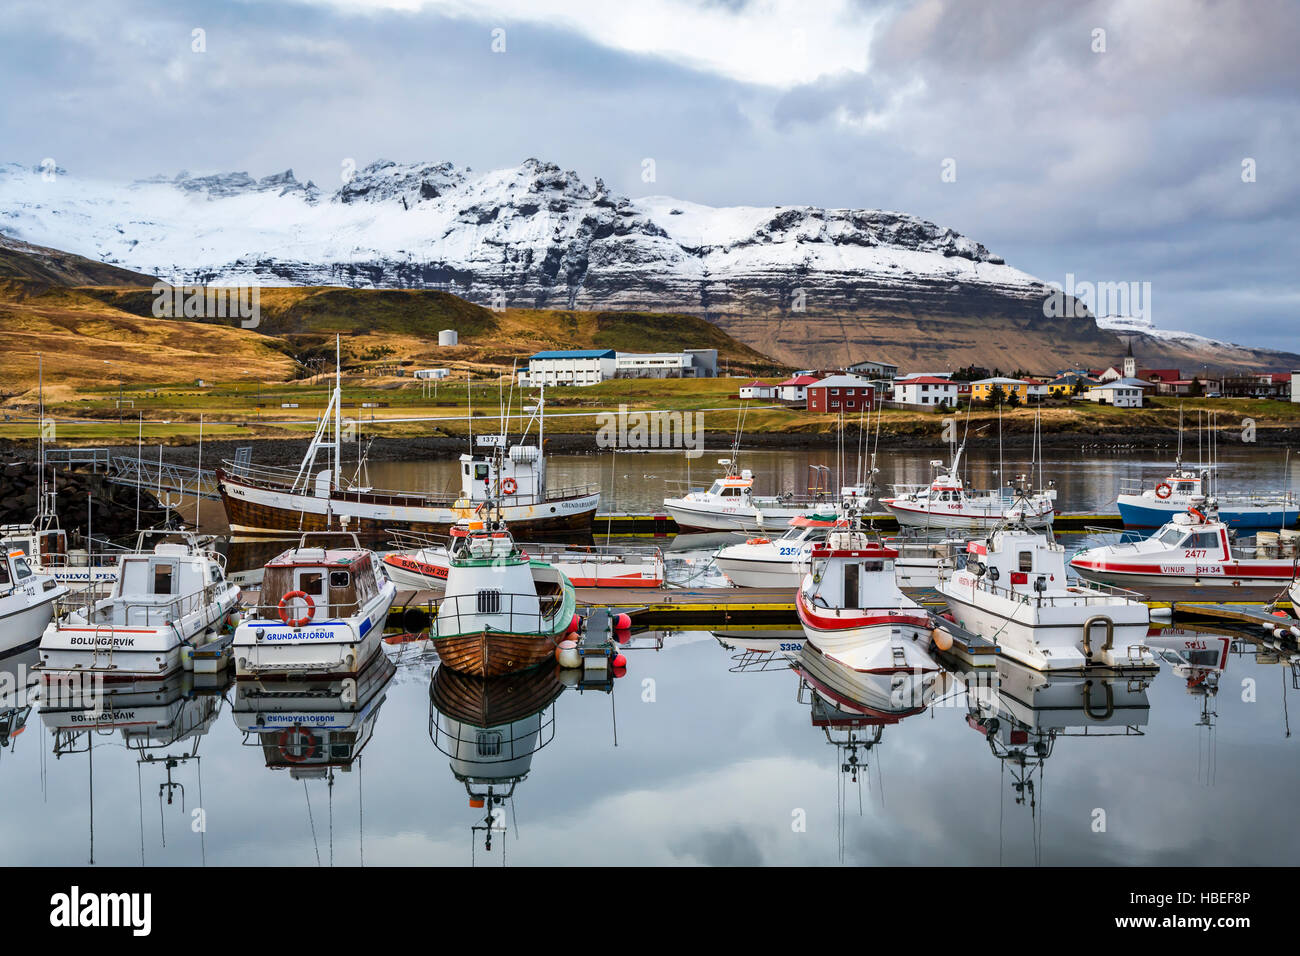 Riflessioni di barche in marina presso il villaggio di Grundarfjordur, Islanda, l'Europa. Foto Stock